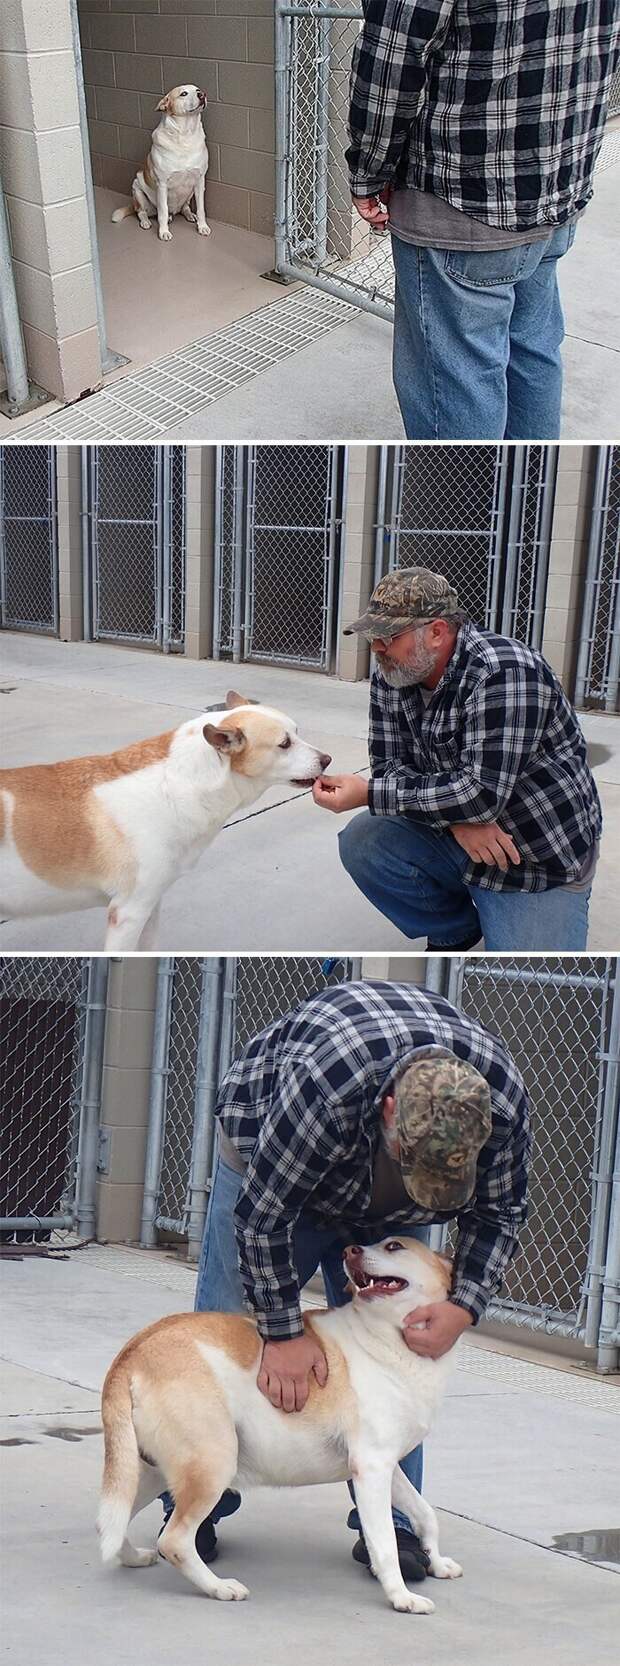 Собака воссоединилась с хозяином спустя три года после пропажи